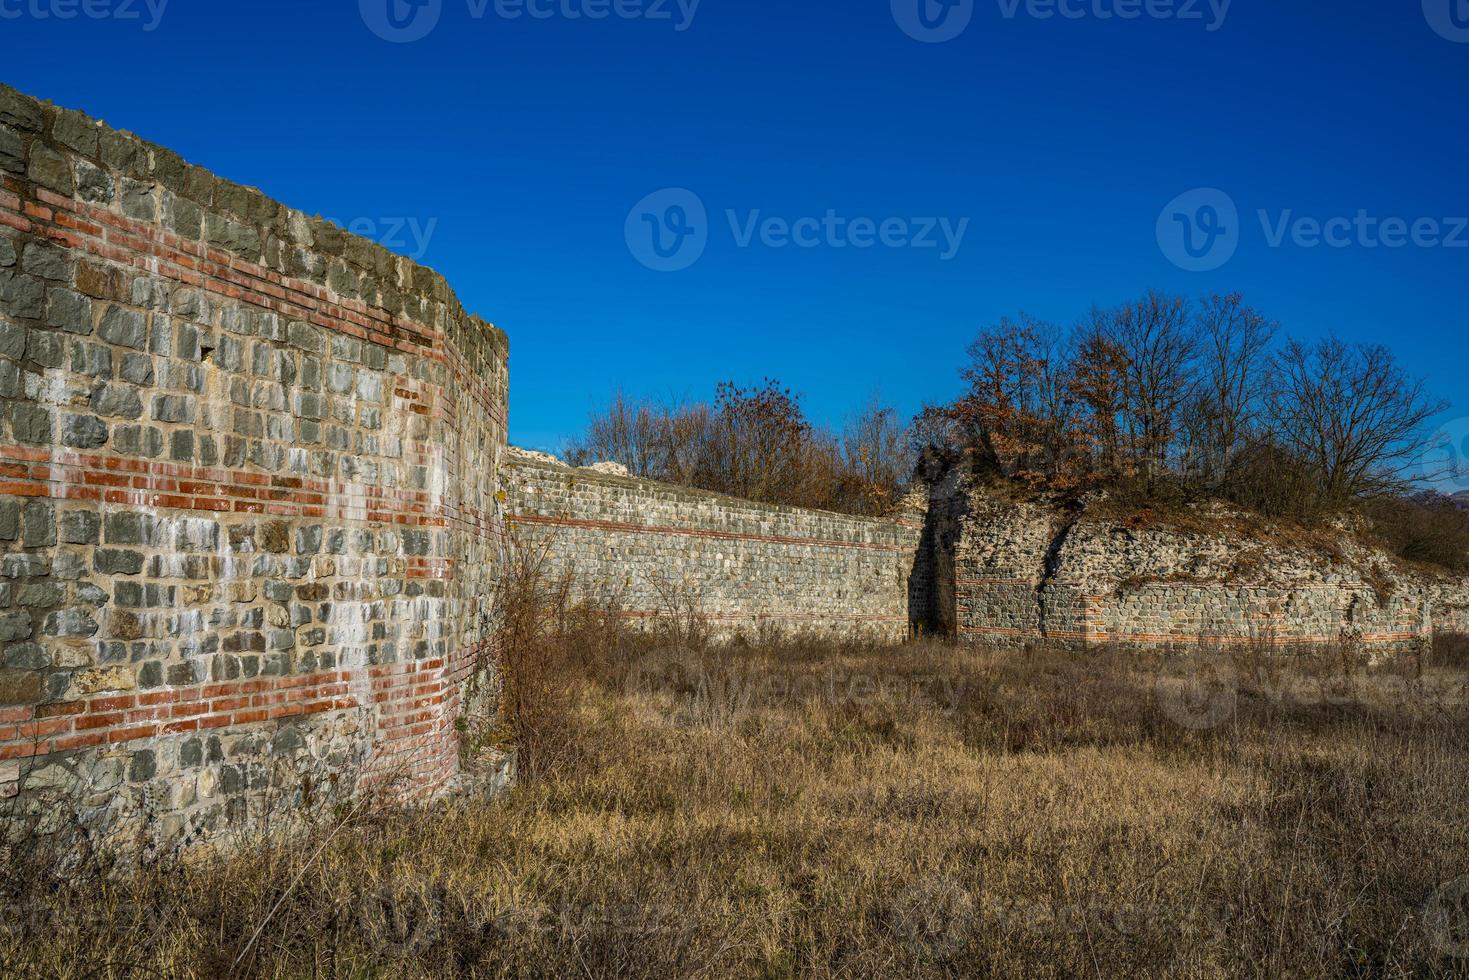 vestiges de l'ancien complexe romain de palais et de temples felix romuliana près de gamzigrad, serbie photo